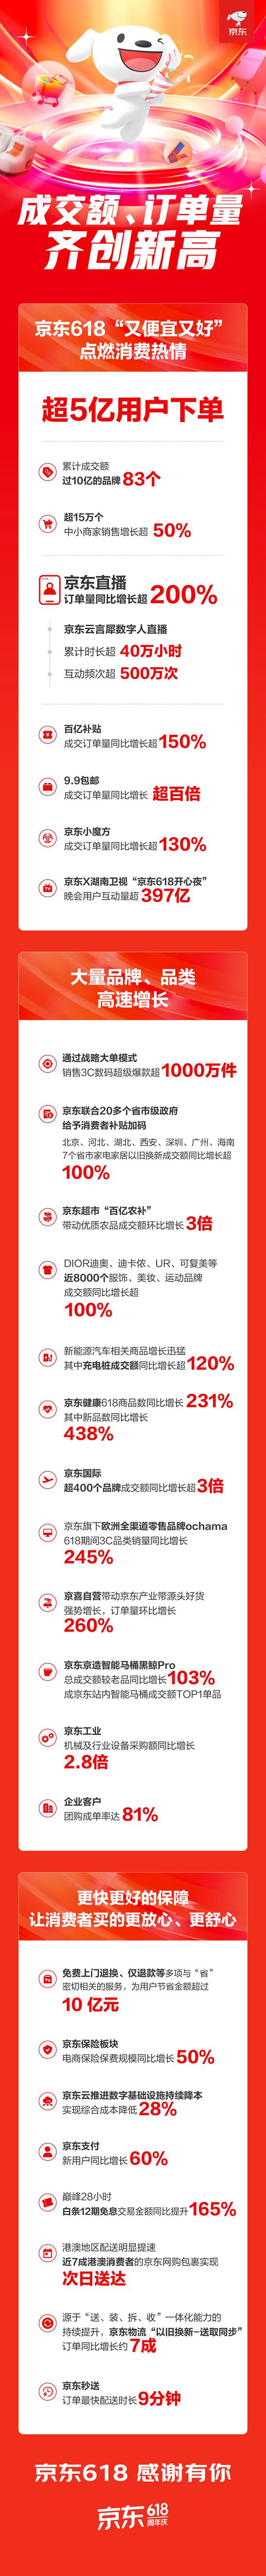 京东618超5亿用户下单 成交额、订单量齐创新高 京东直播订单量同比增长超200%